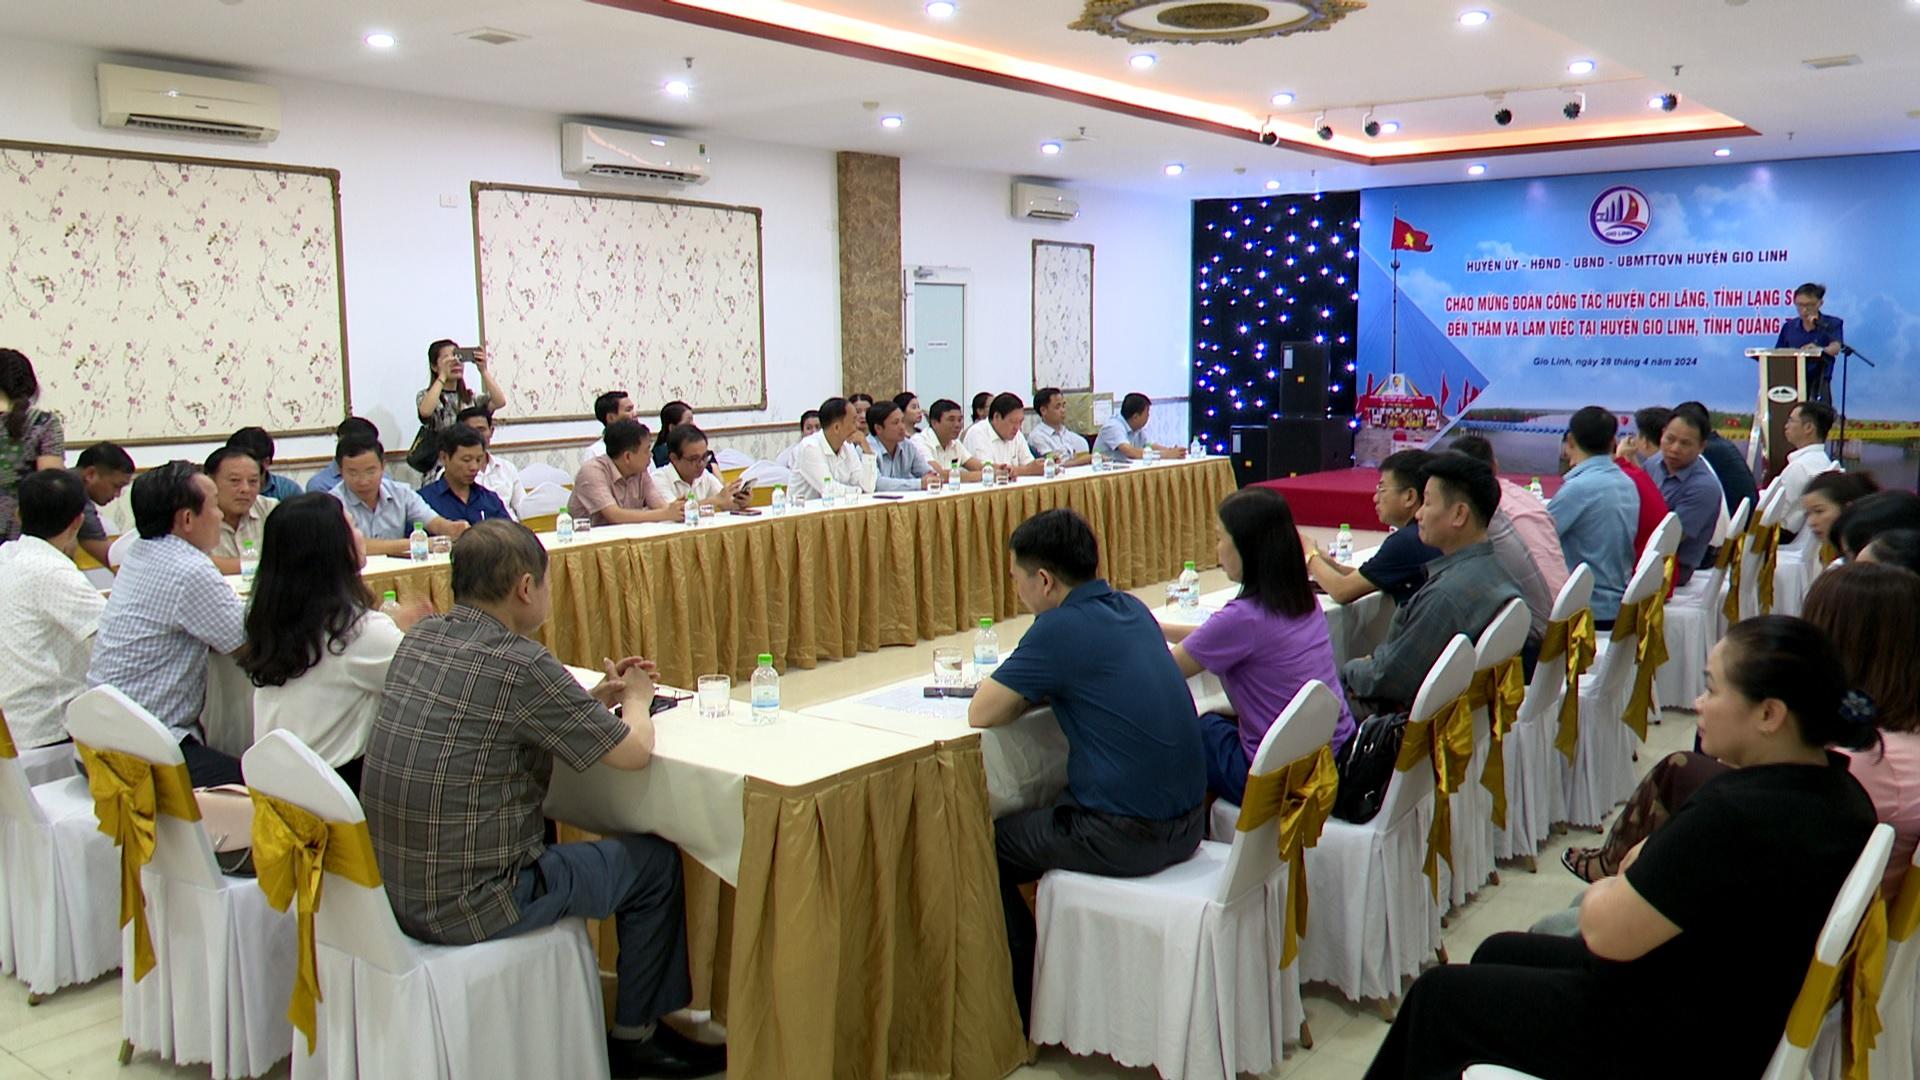 Đoàn công tác huyện Chi Lăng, tỉnh Lạng Sơn học tập trao đổi kinh nghiệm tại huyện Gio Linh